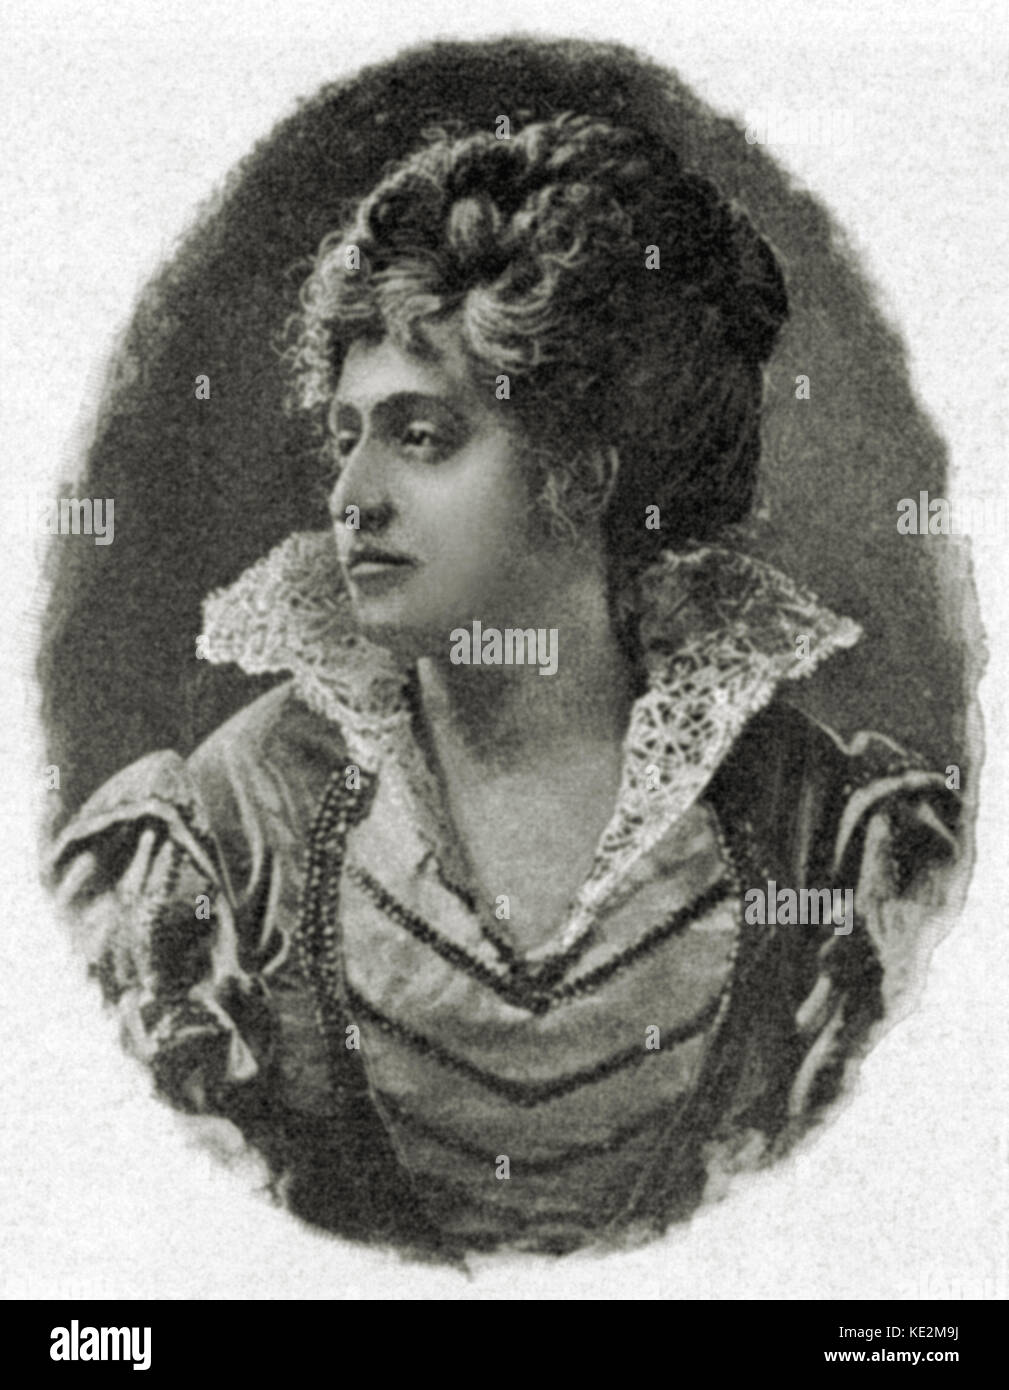 Maddalena Mariani-Masi - Ritratto in ruolo come La Gioconda, creatore del ruolo in Almicare Ponchielli opera. Soprano italiano. 1850 - 25 settembre 1916. Foto Stock